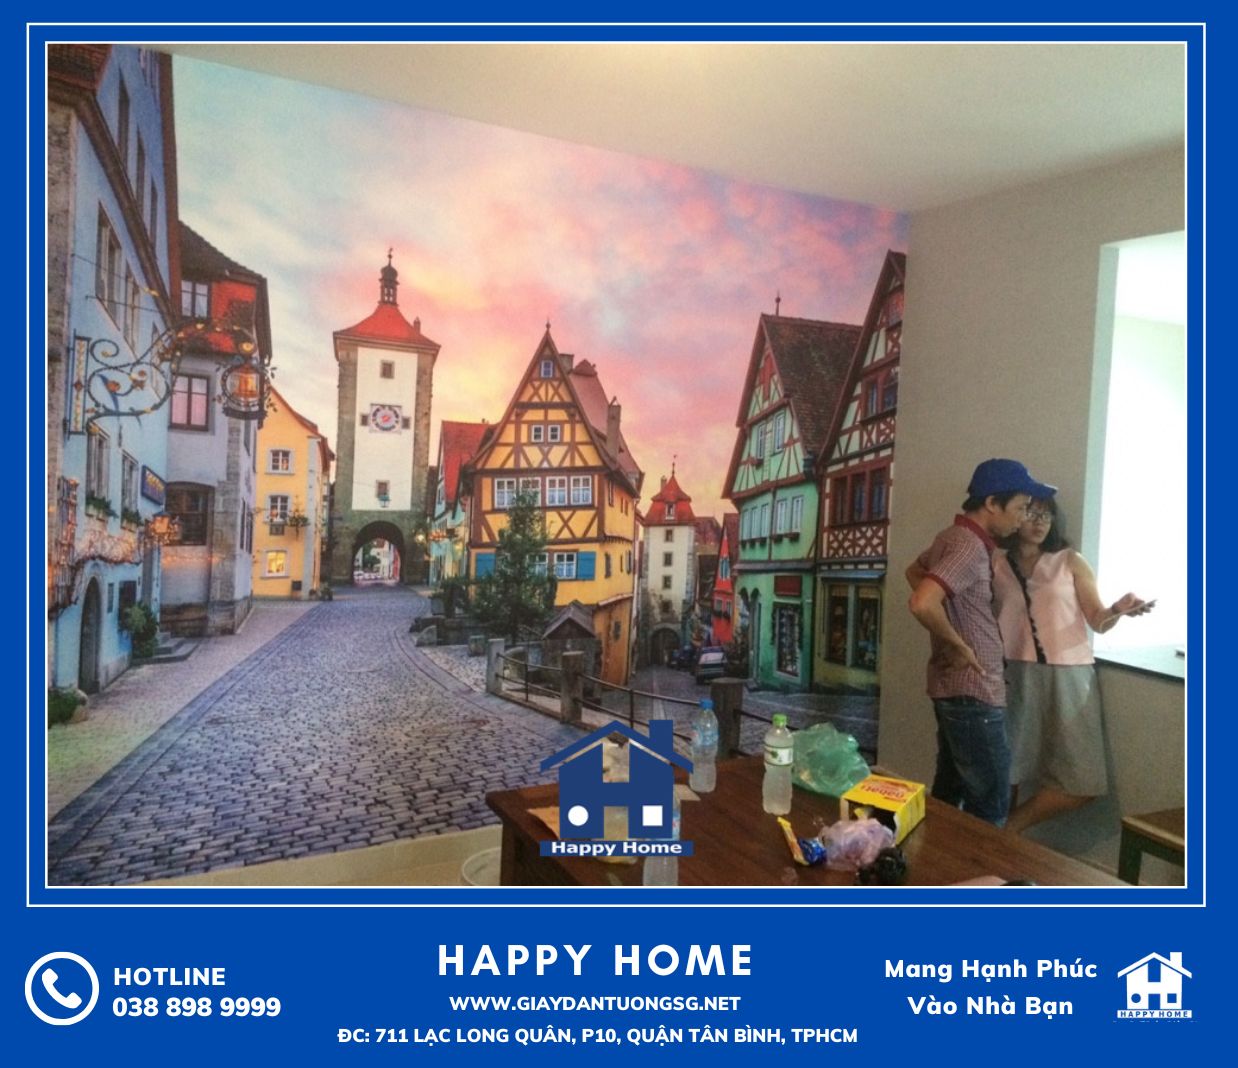 Happy Home kết hợp thi công giấy dán tường và tranh dán tường 3D cho khách hàng tại chung cư